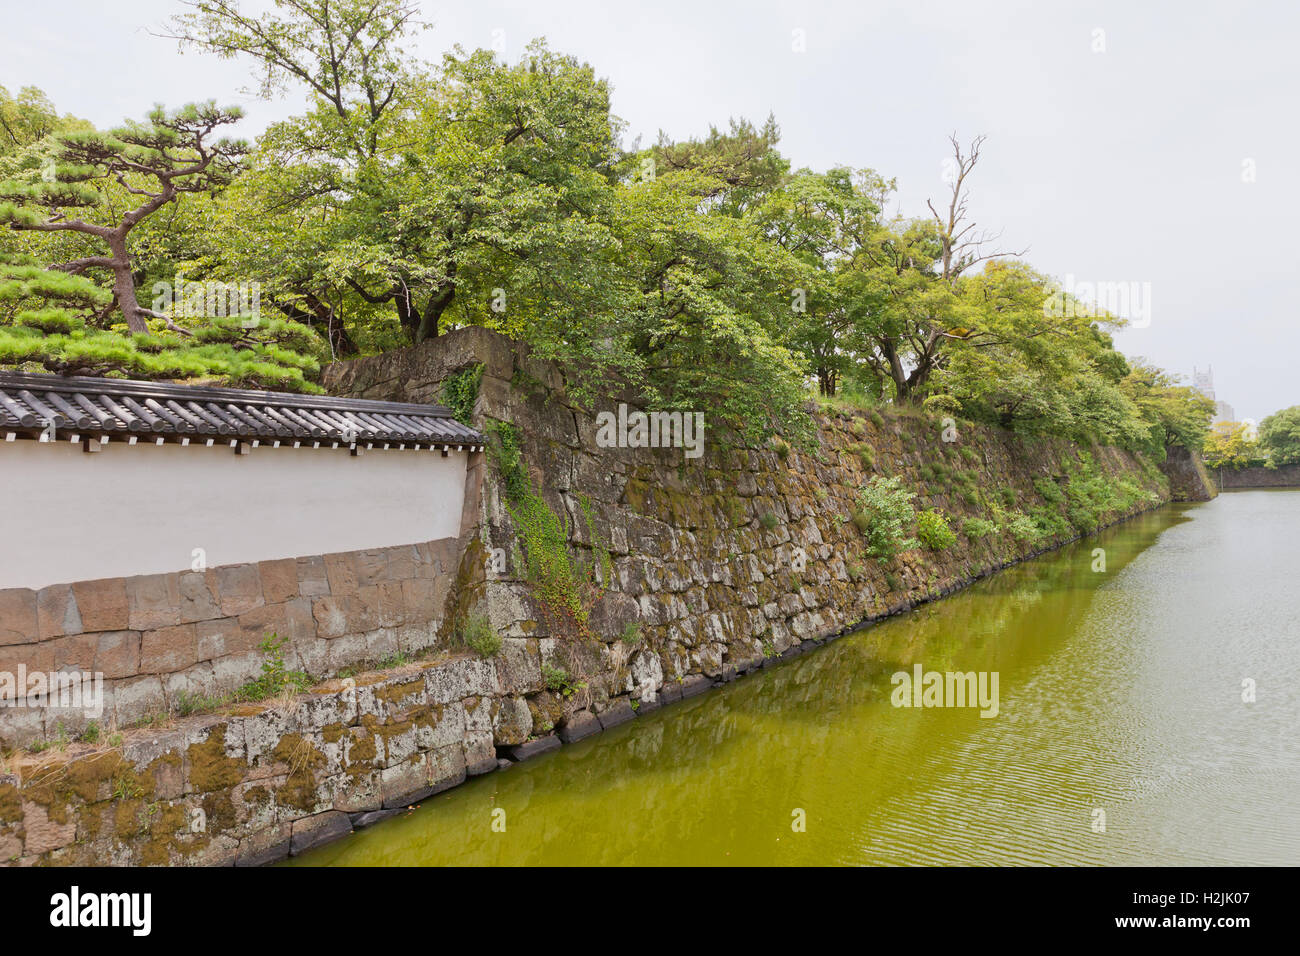 Moat (hori) and stone walls (ishigaki) of Wakayama castle, Japan Stock Photo